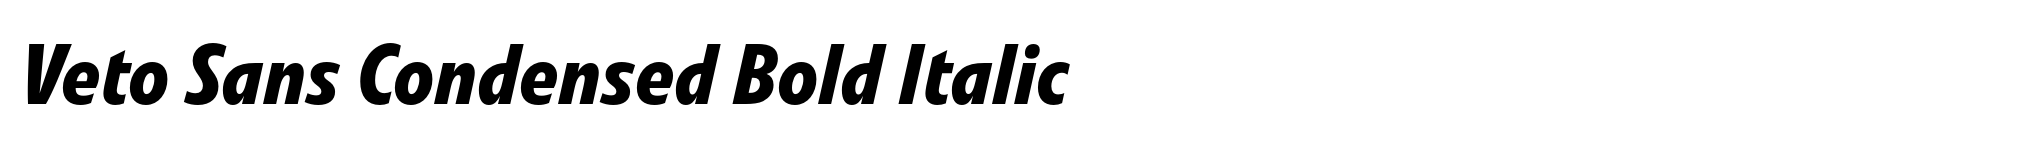 Veto Sans Condensed Bold Italic image